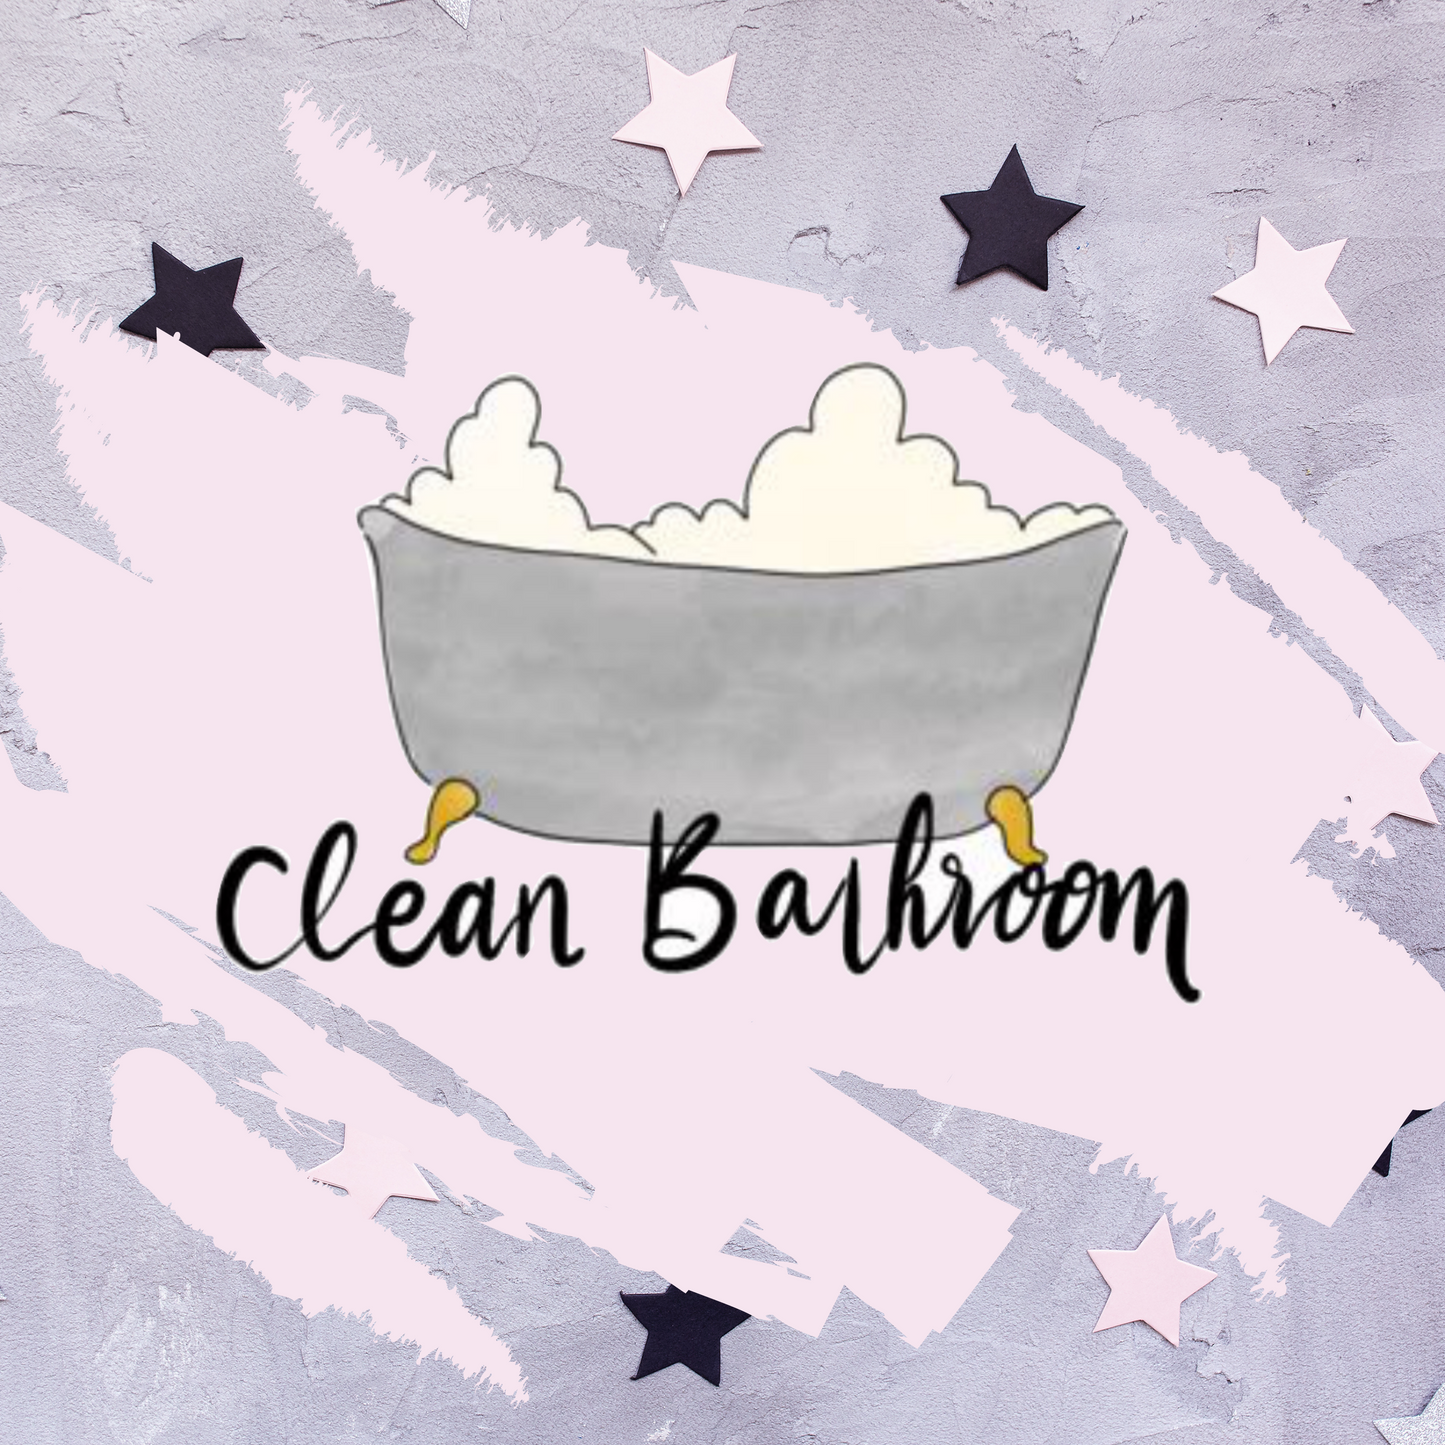 Clean bathroom icons - Hand drawn mini sticker sheet